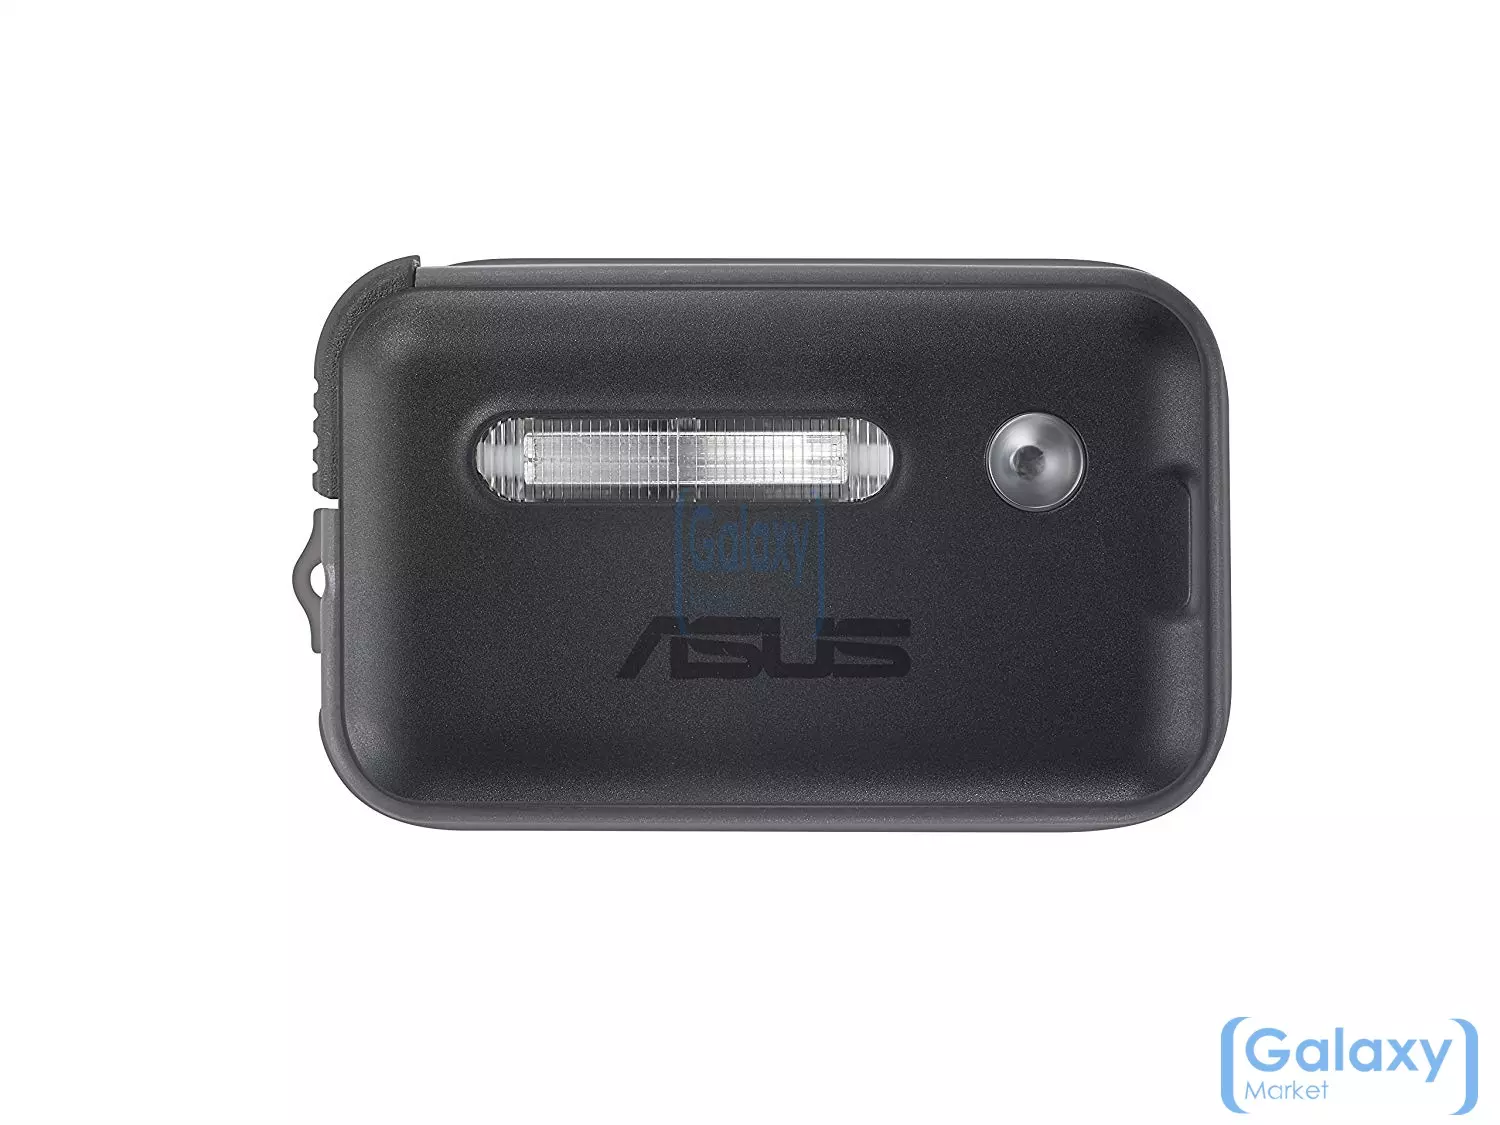  Светодиодная вcпышка ASUS ZenFlash (AFLU002) для смартфонов Black (Черный)